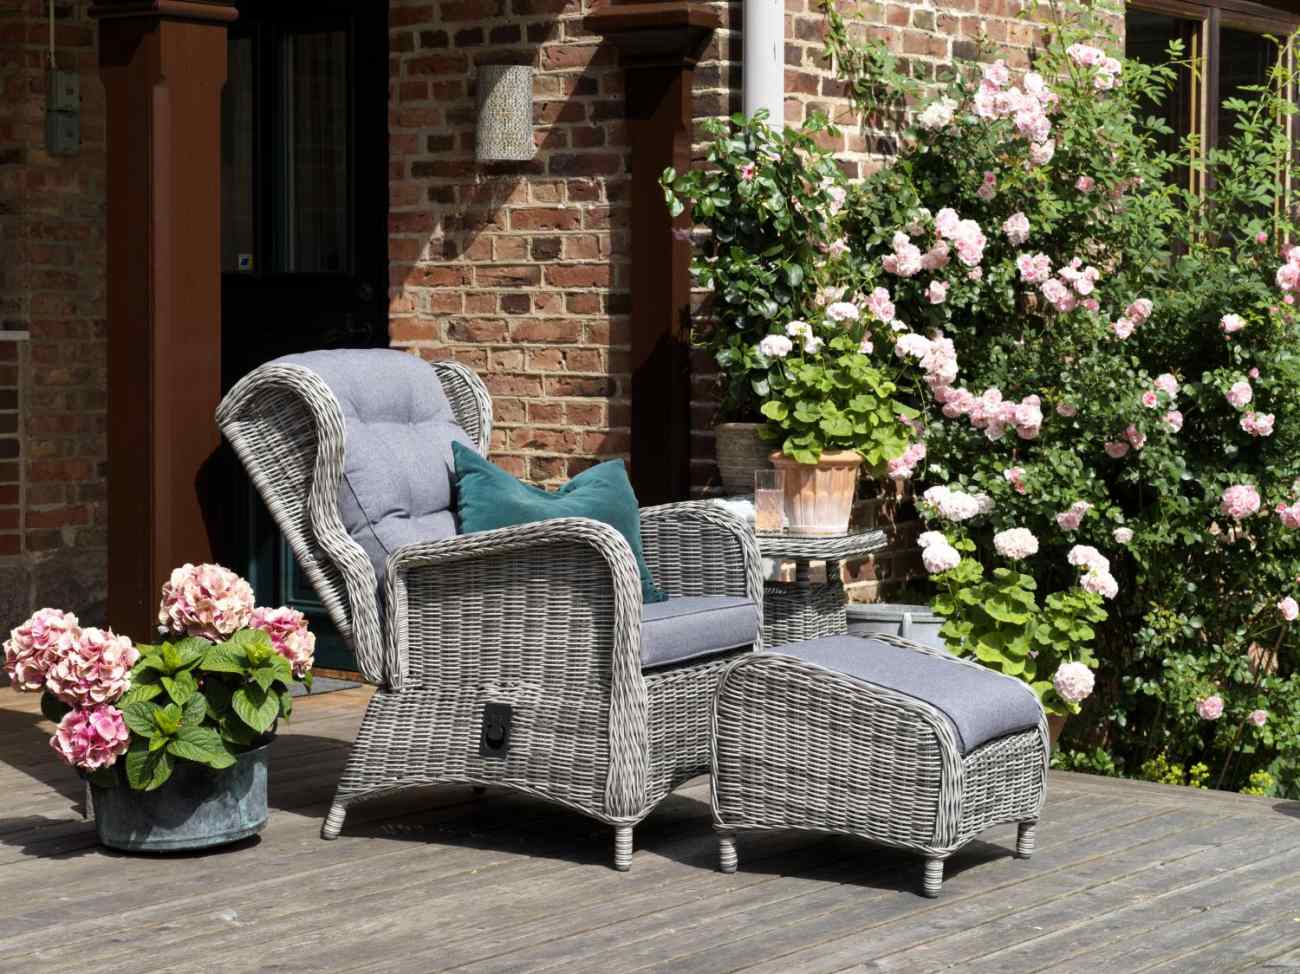 Der Gartensessel Rosita überzeugt mit seinem modernen Design. Gefertigt wurde er aus Rattan, welches einen grauen Farbton besitzt. Das Gestell ist aus Metall und hat eine schwarze Farbe. Die Sitzhöhe des Sessels beträgt 48 cm.